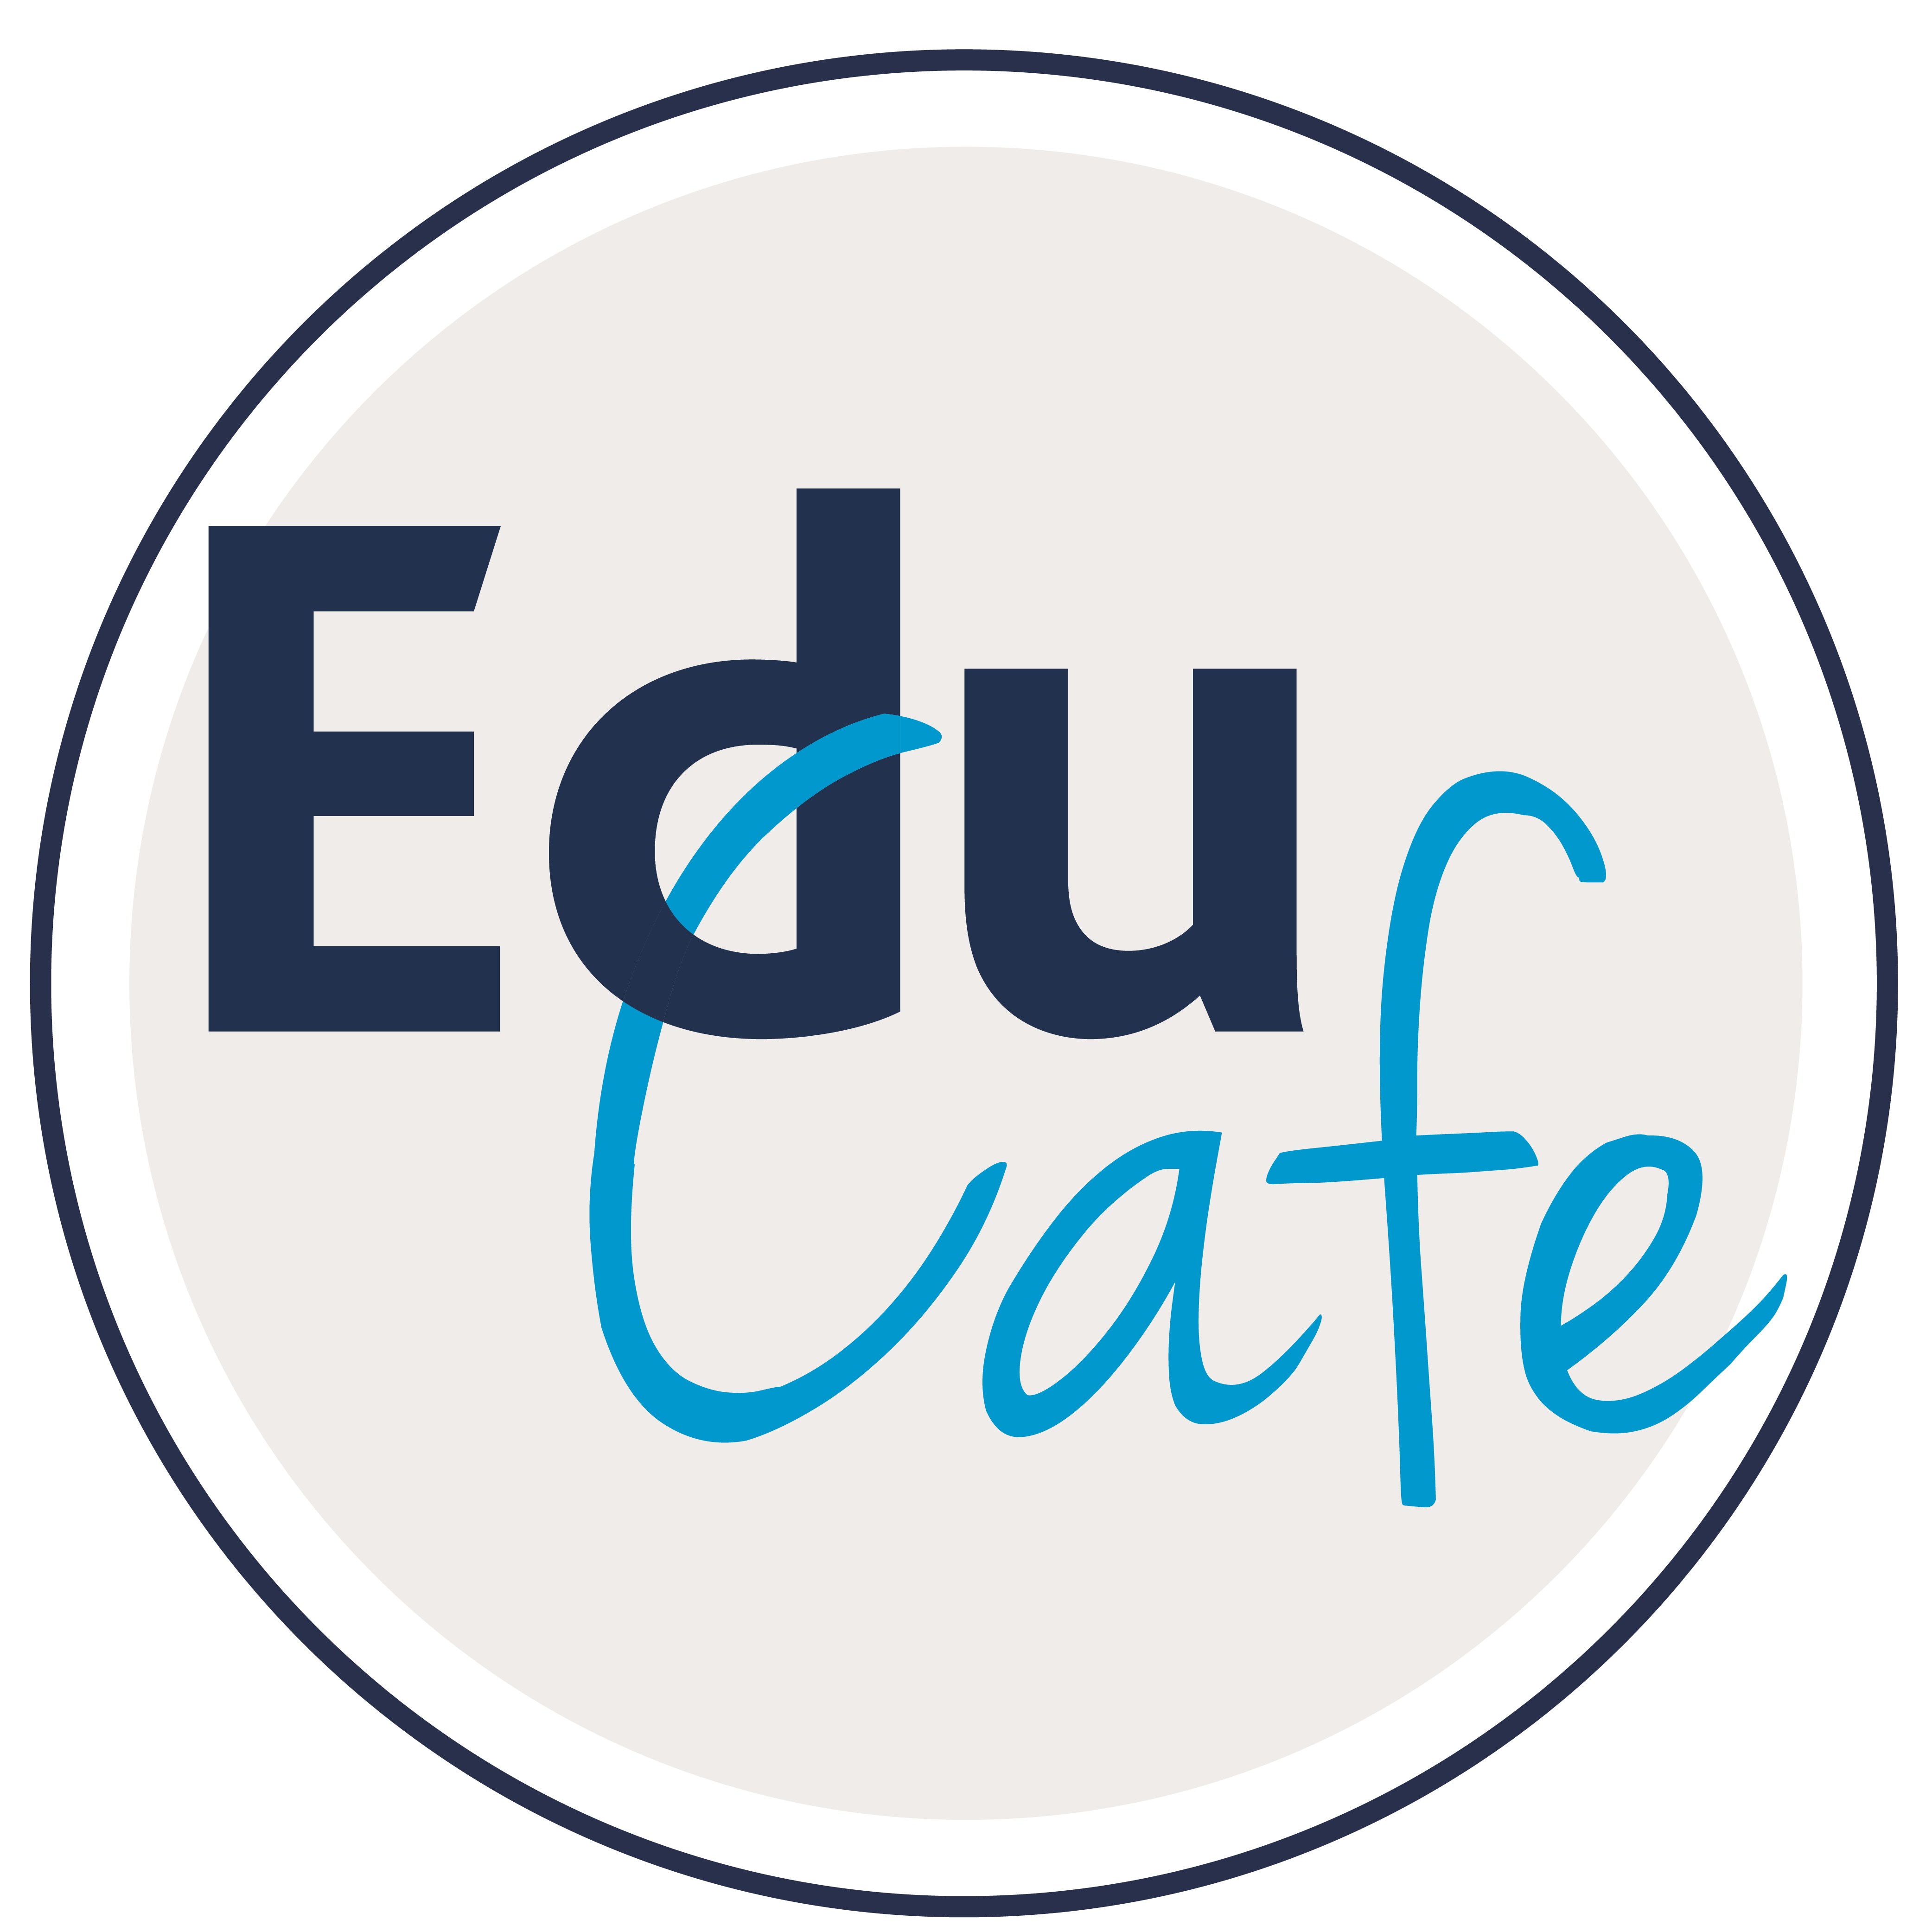 The Educafe logo2